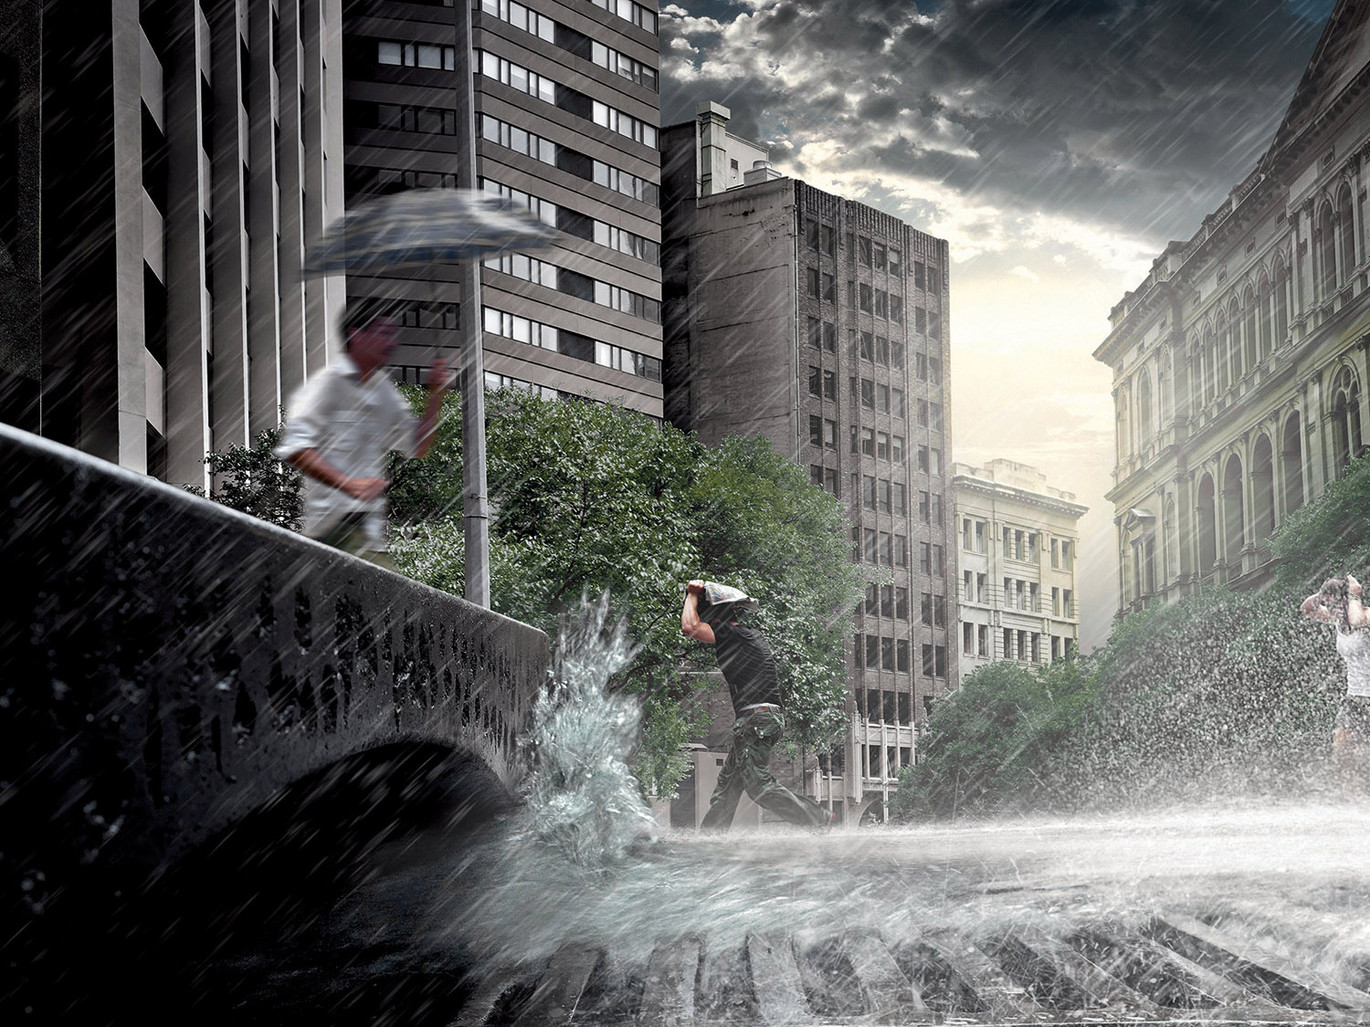 Überschwemmung-Stadt-Straßen-Kanalisation-dramatischer-Himmel-Menschen-Regenschirme-Bäume-Gebäude-Sonnenlicht-Wolken